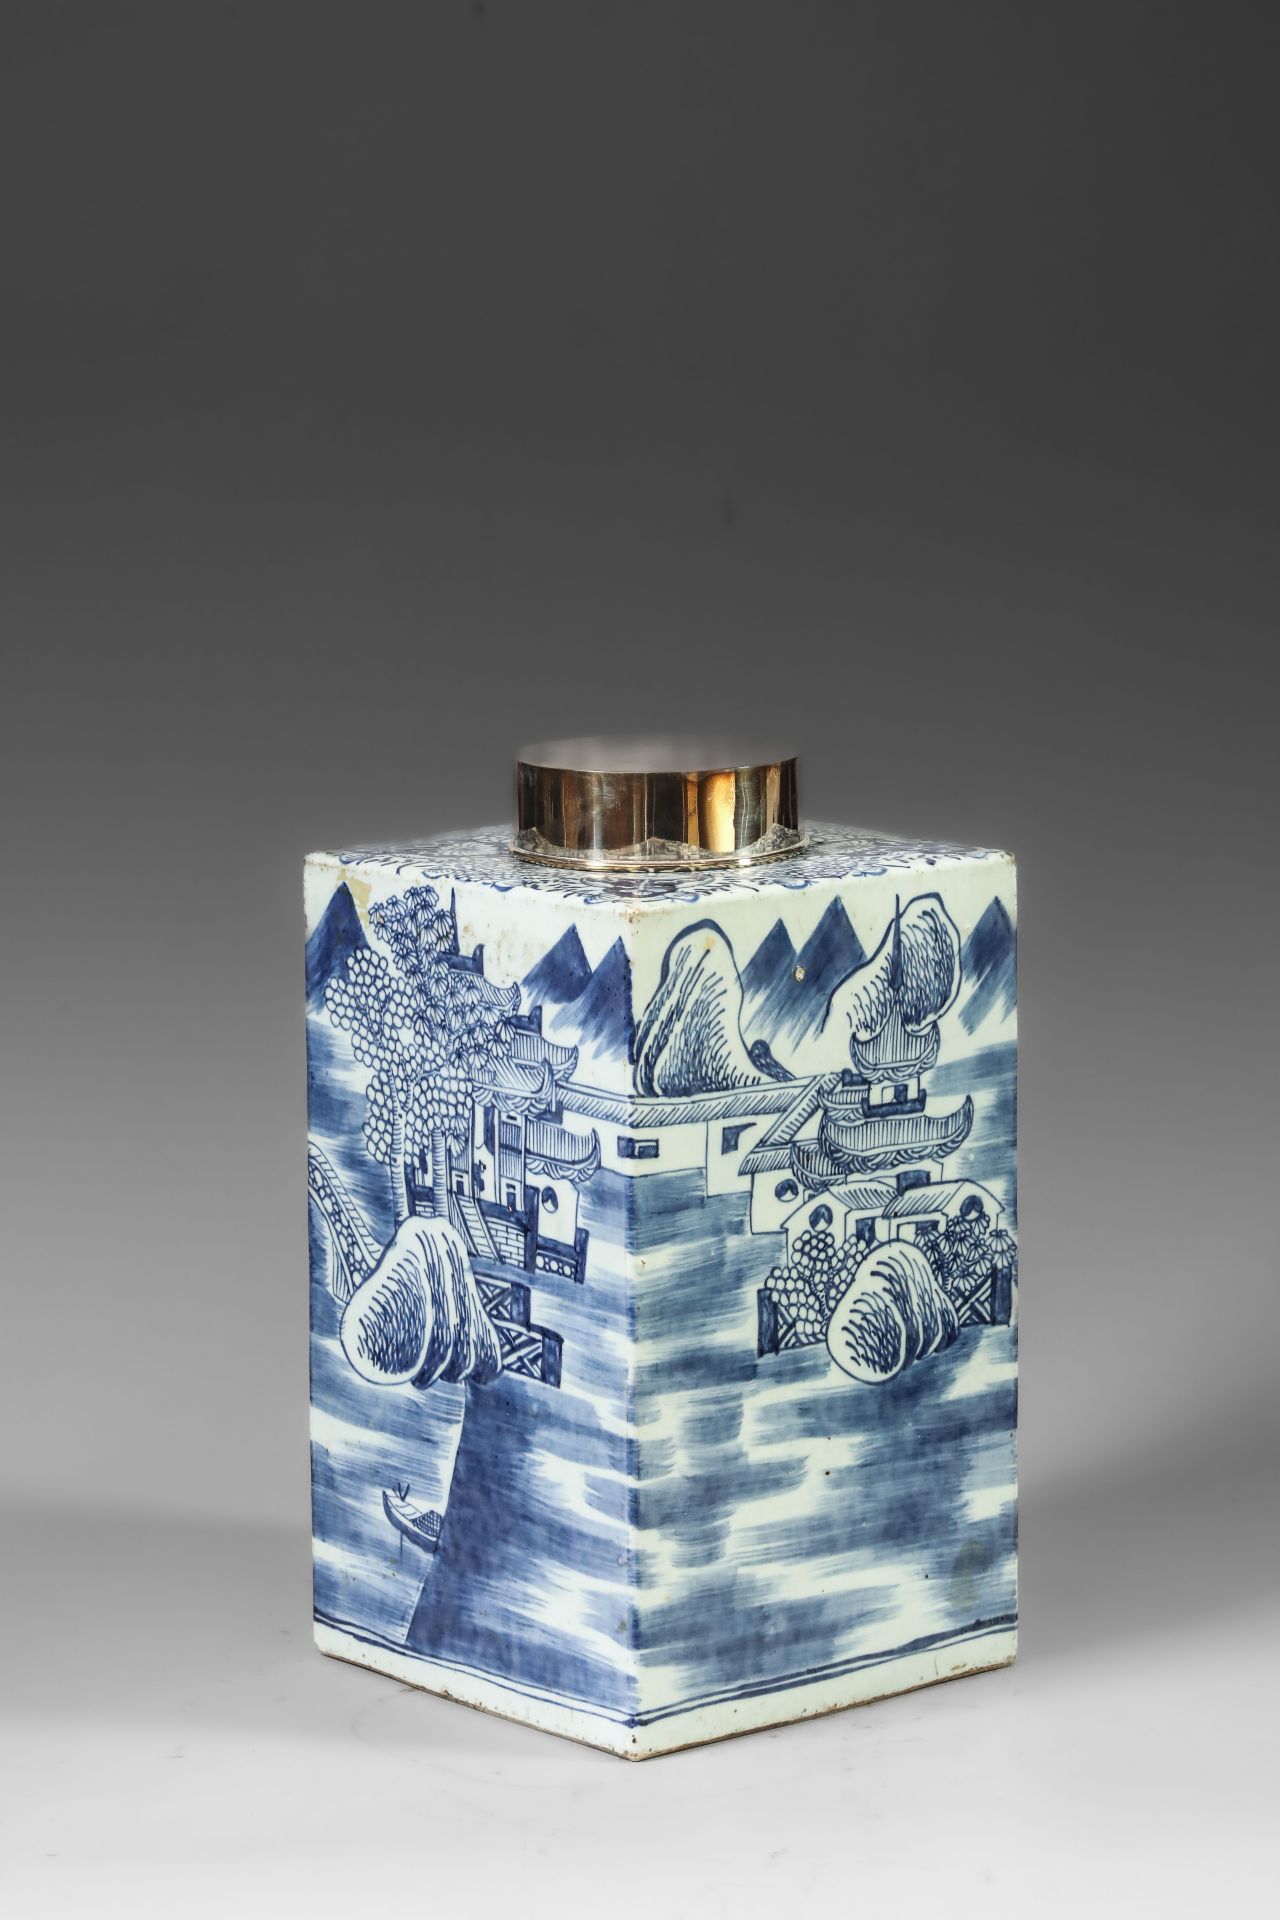 Suite de neuf pots à thé quadrangulaire en porcelaine blanche décoré en bleu sous couverte de - Image 25 of 47